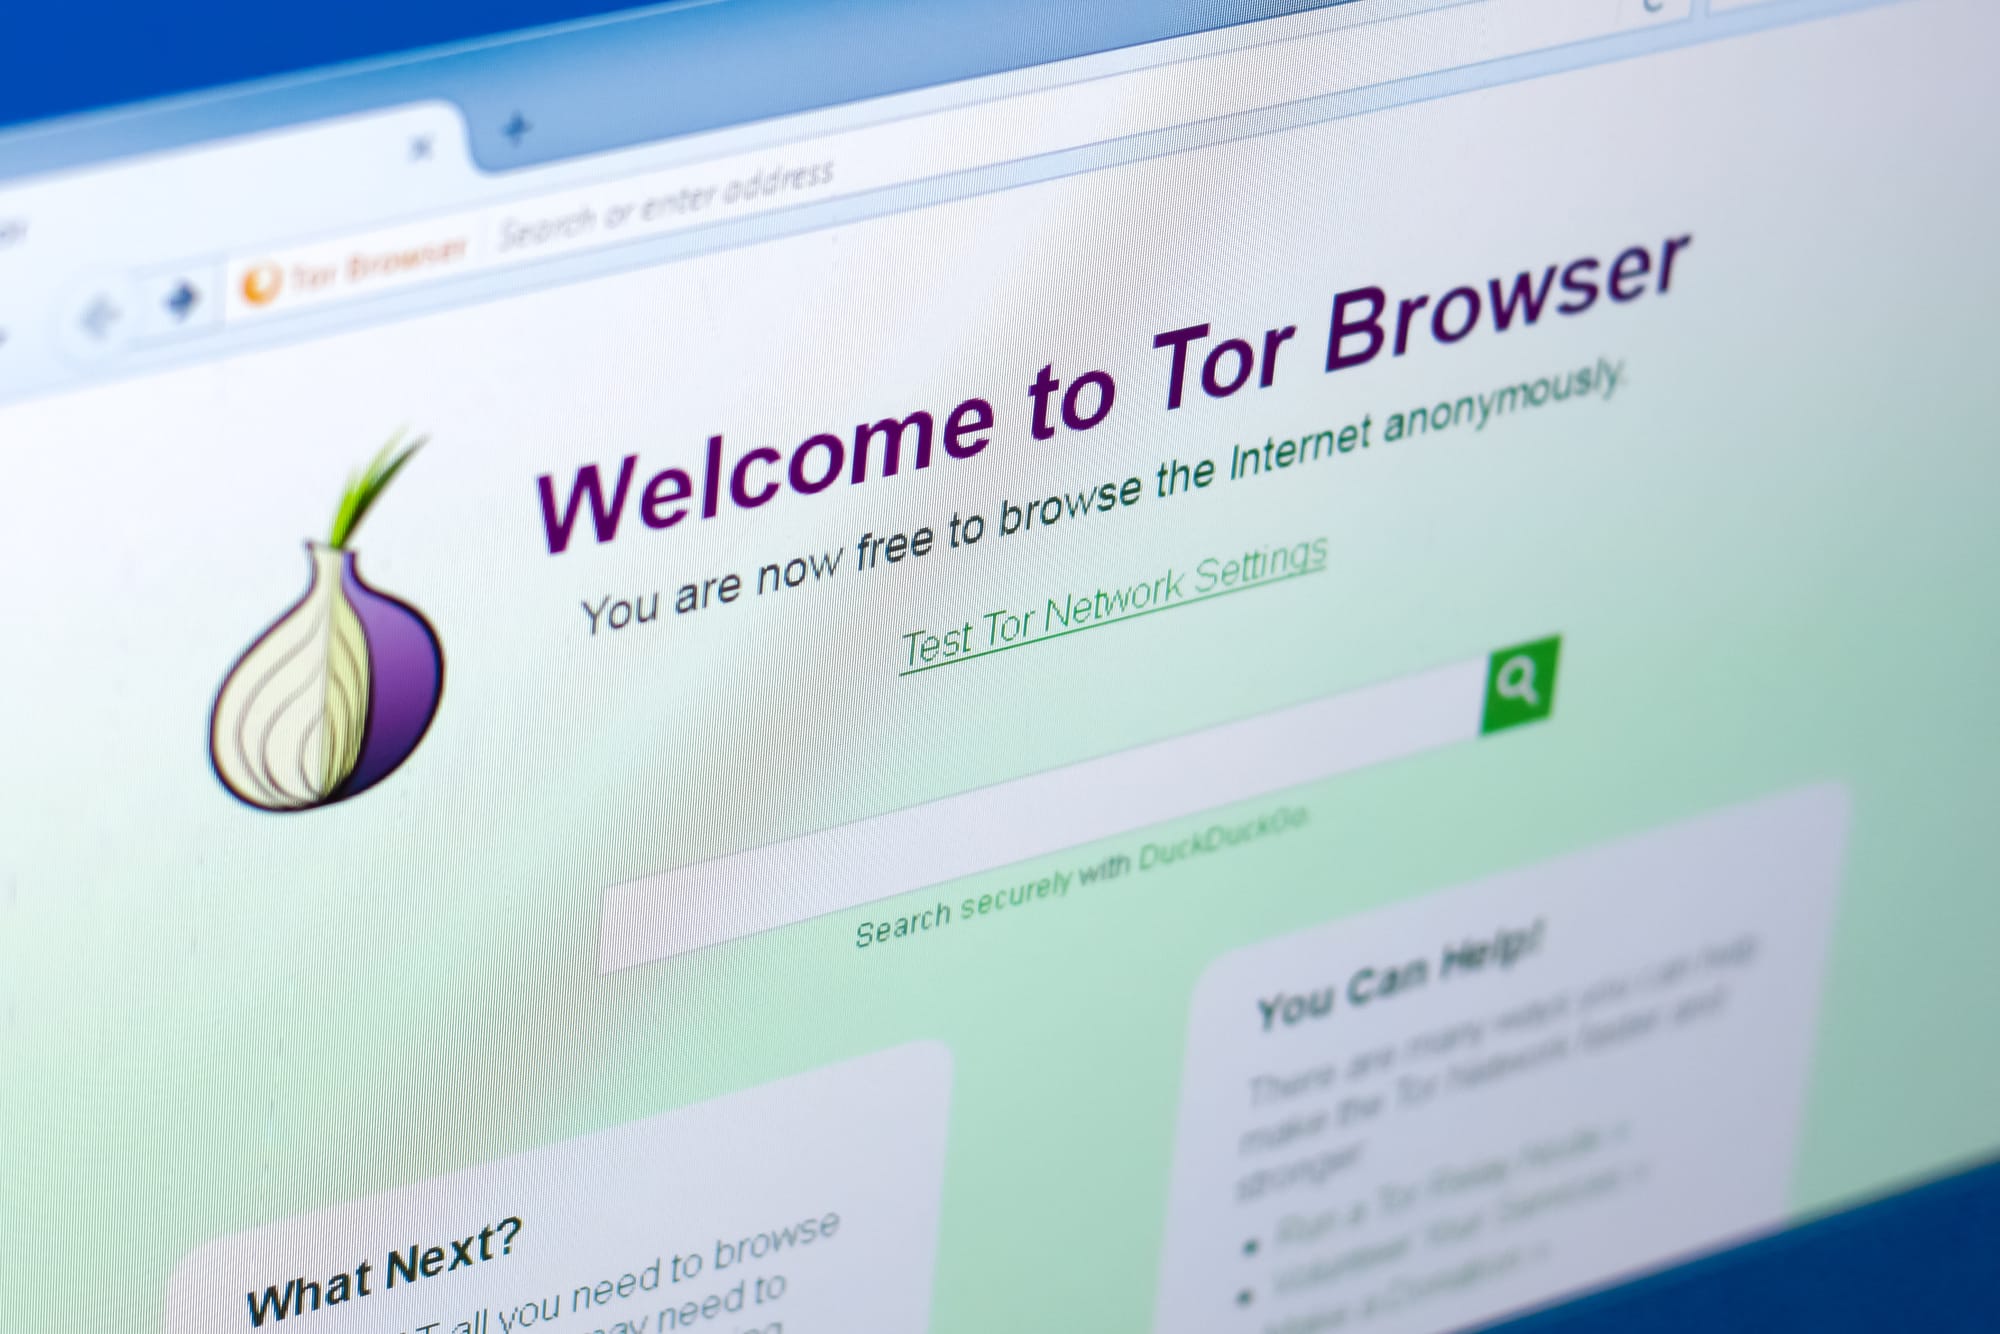 Tor – Hệ thống chặn và biện pháp đối phó